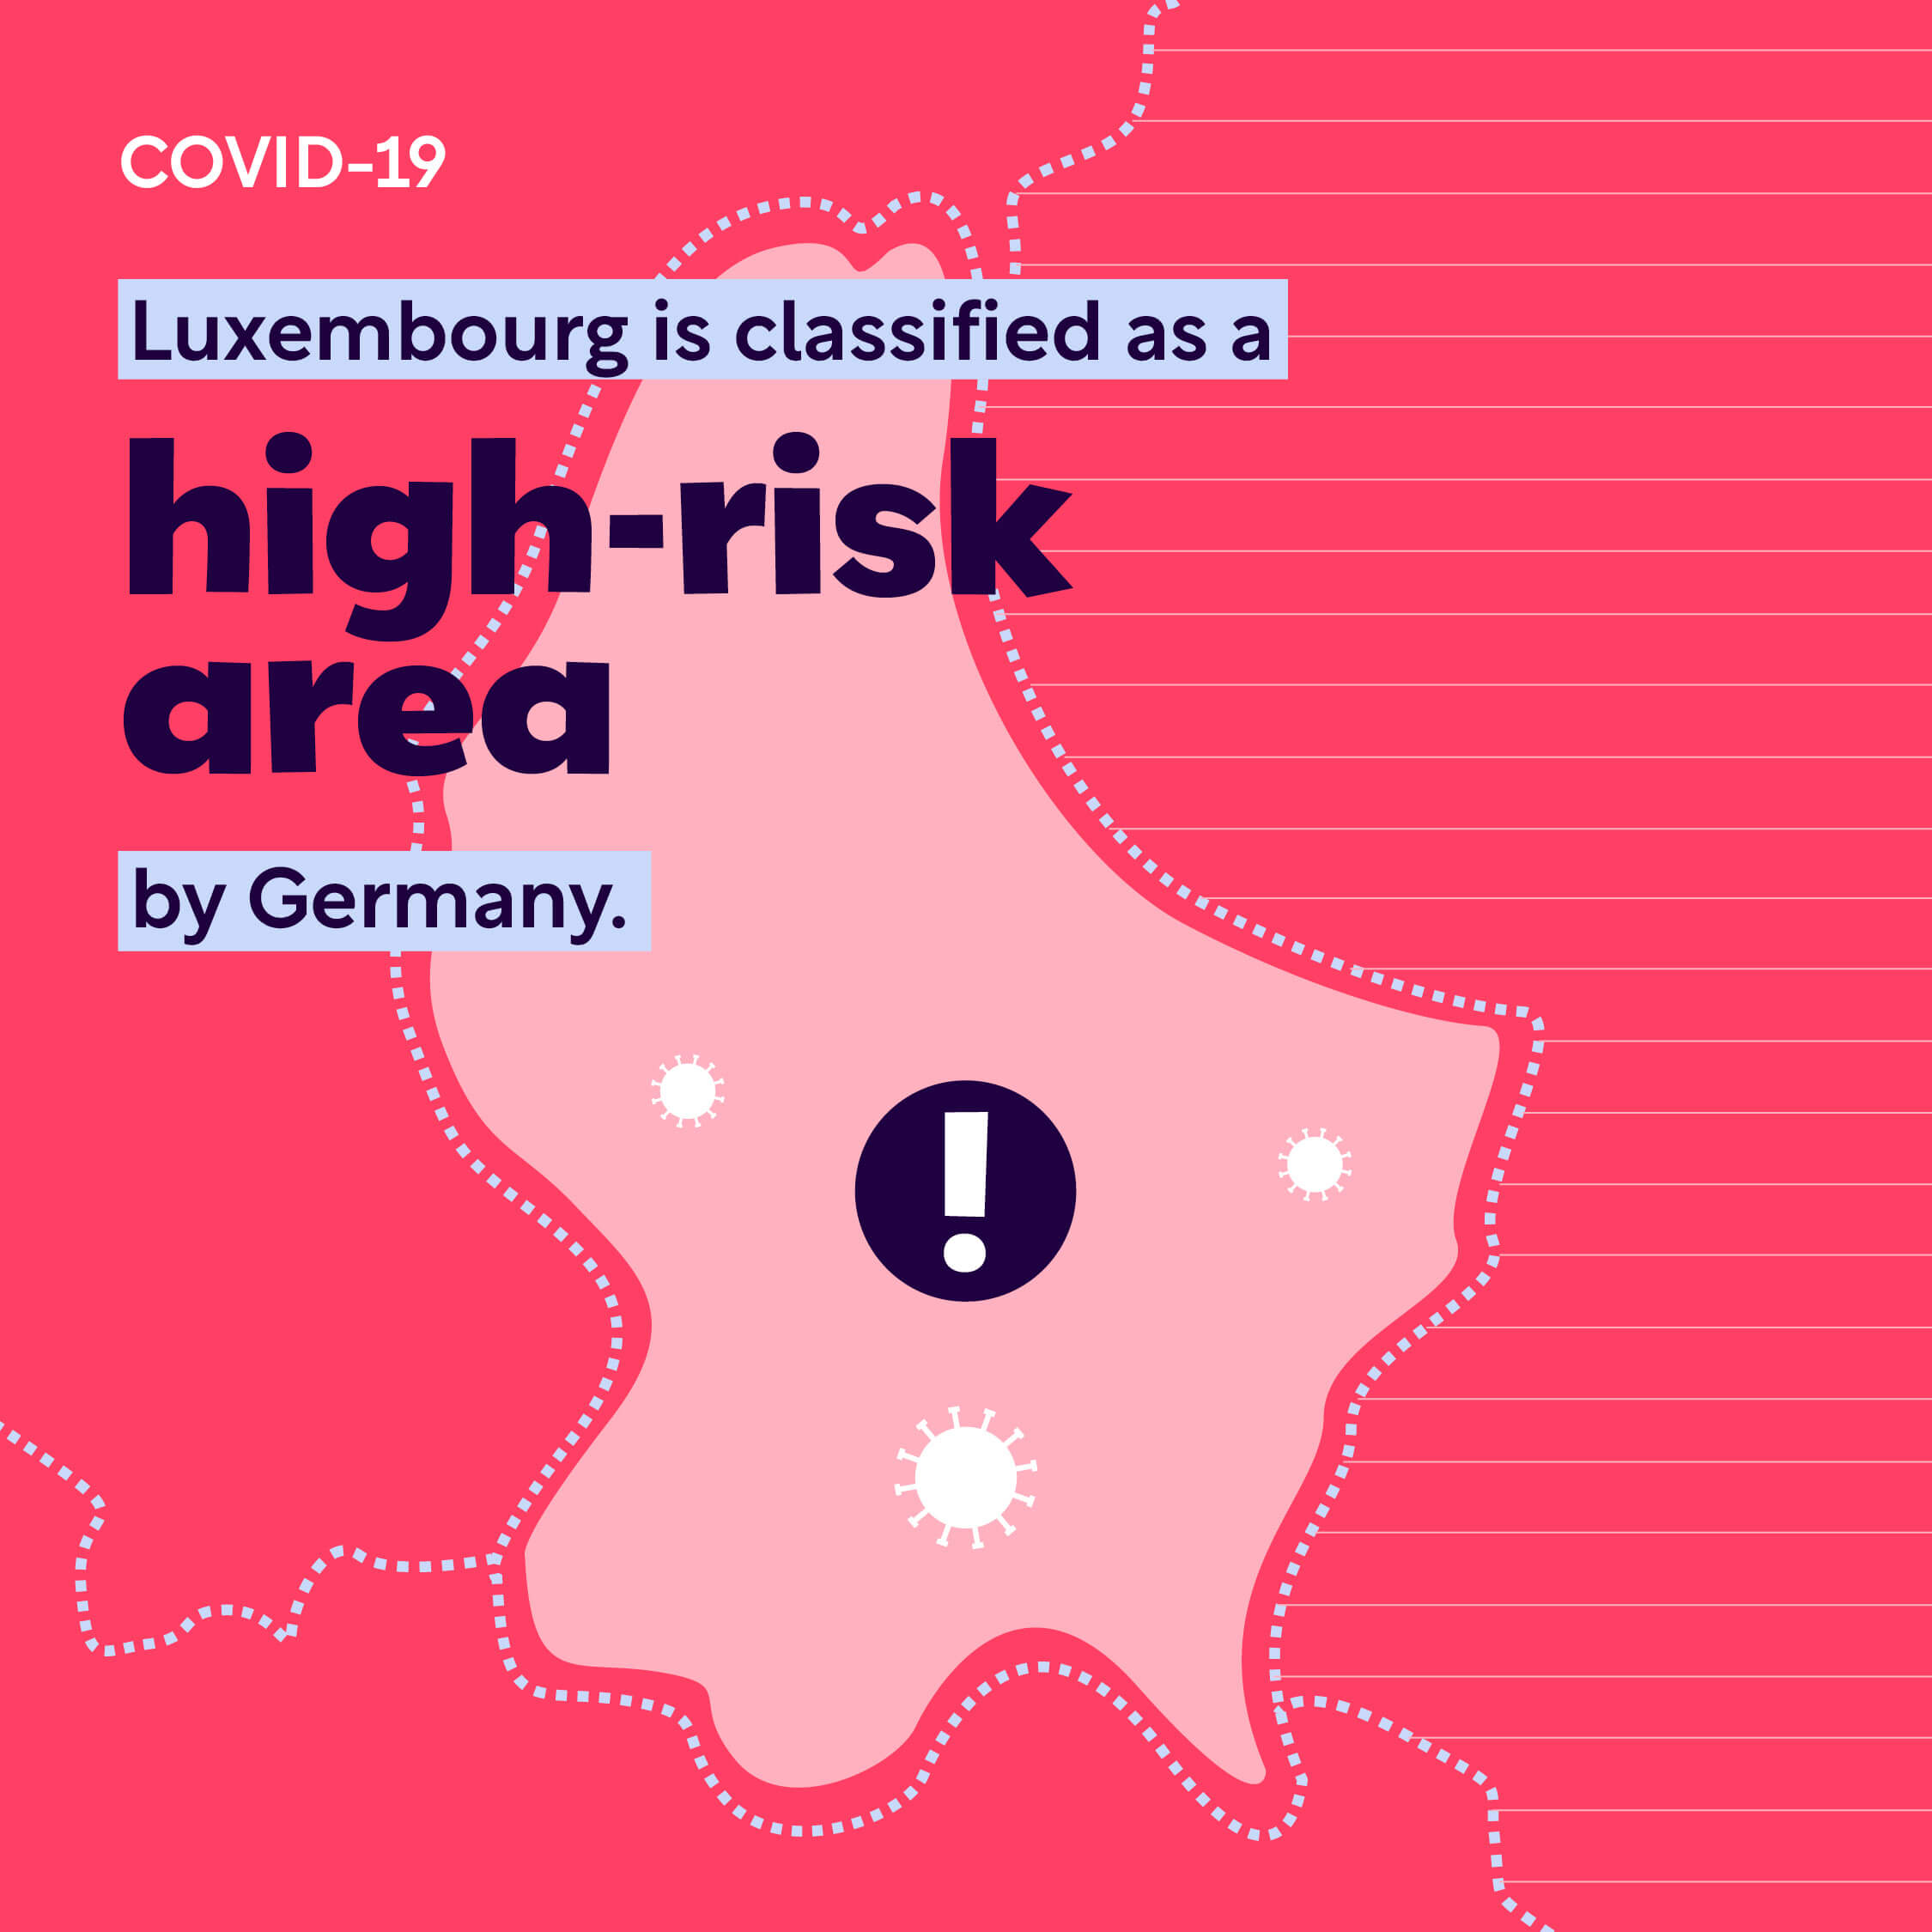 Image d'alerte montrant que le Luxembourg avait été classé comme un pays à risque élevé par l'Allemagne lors de l'épidémie de Covid-19